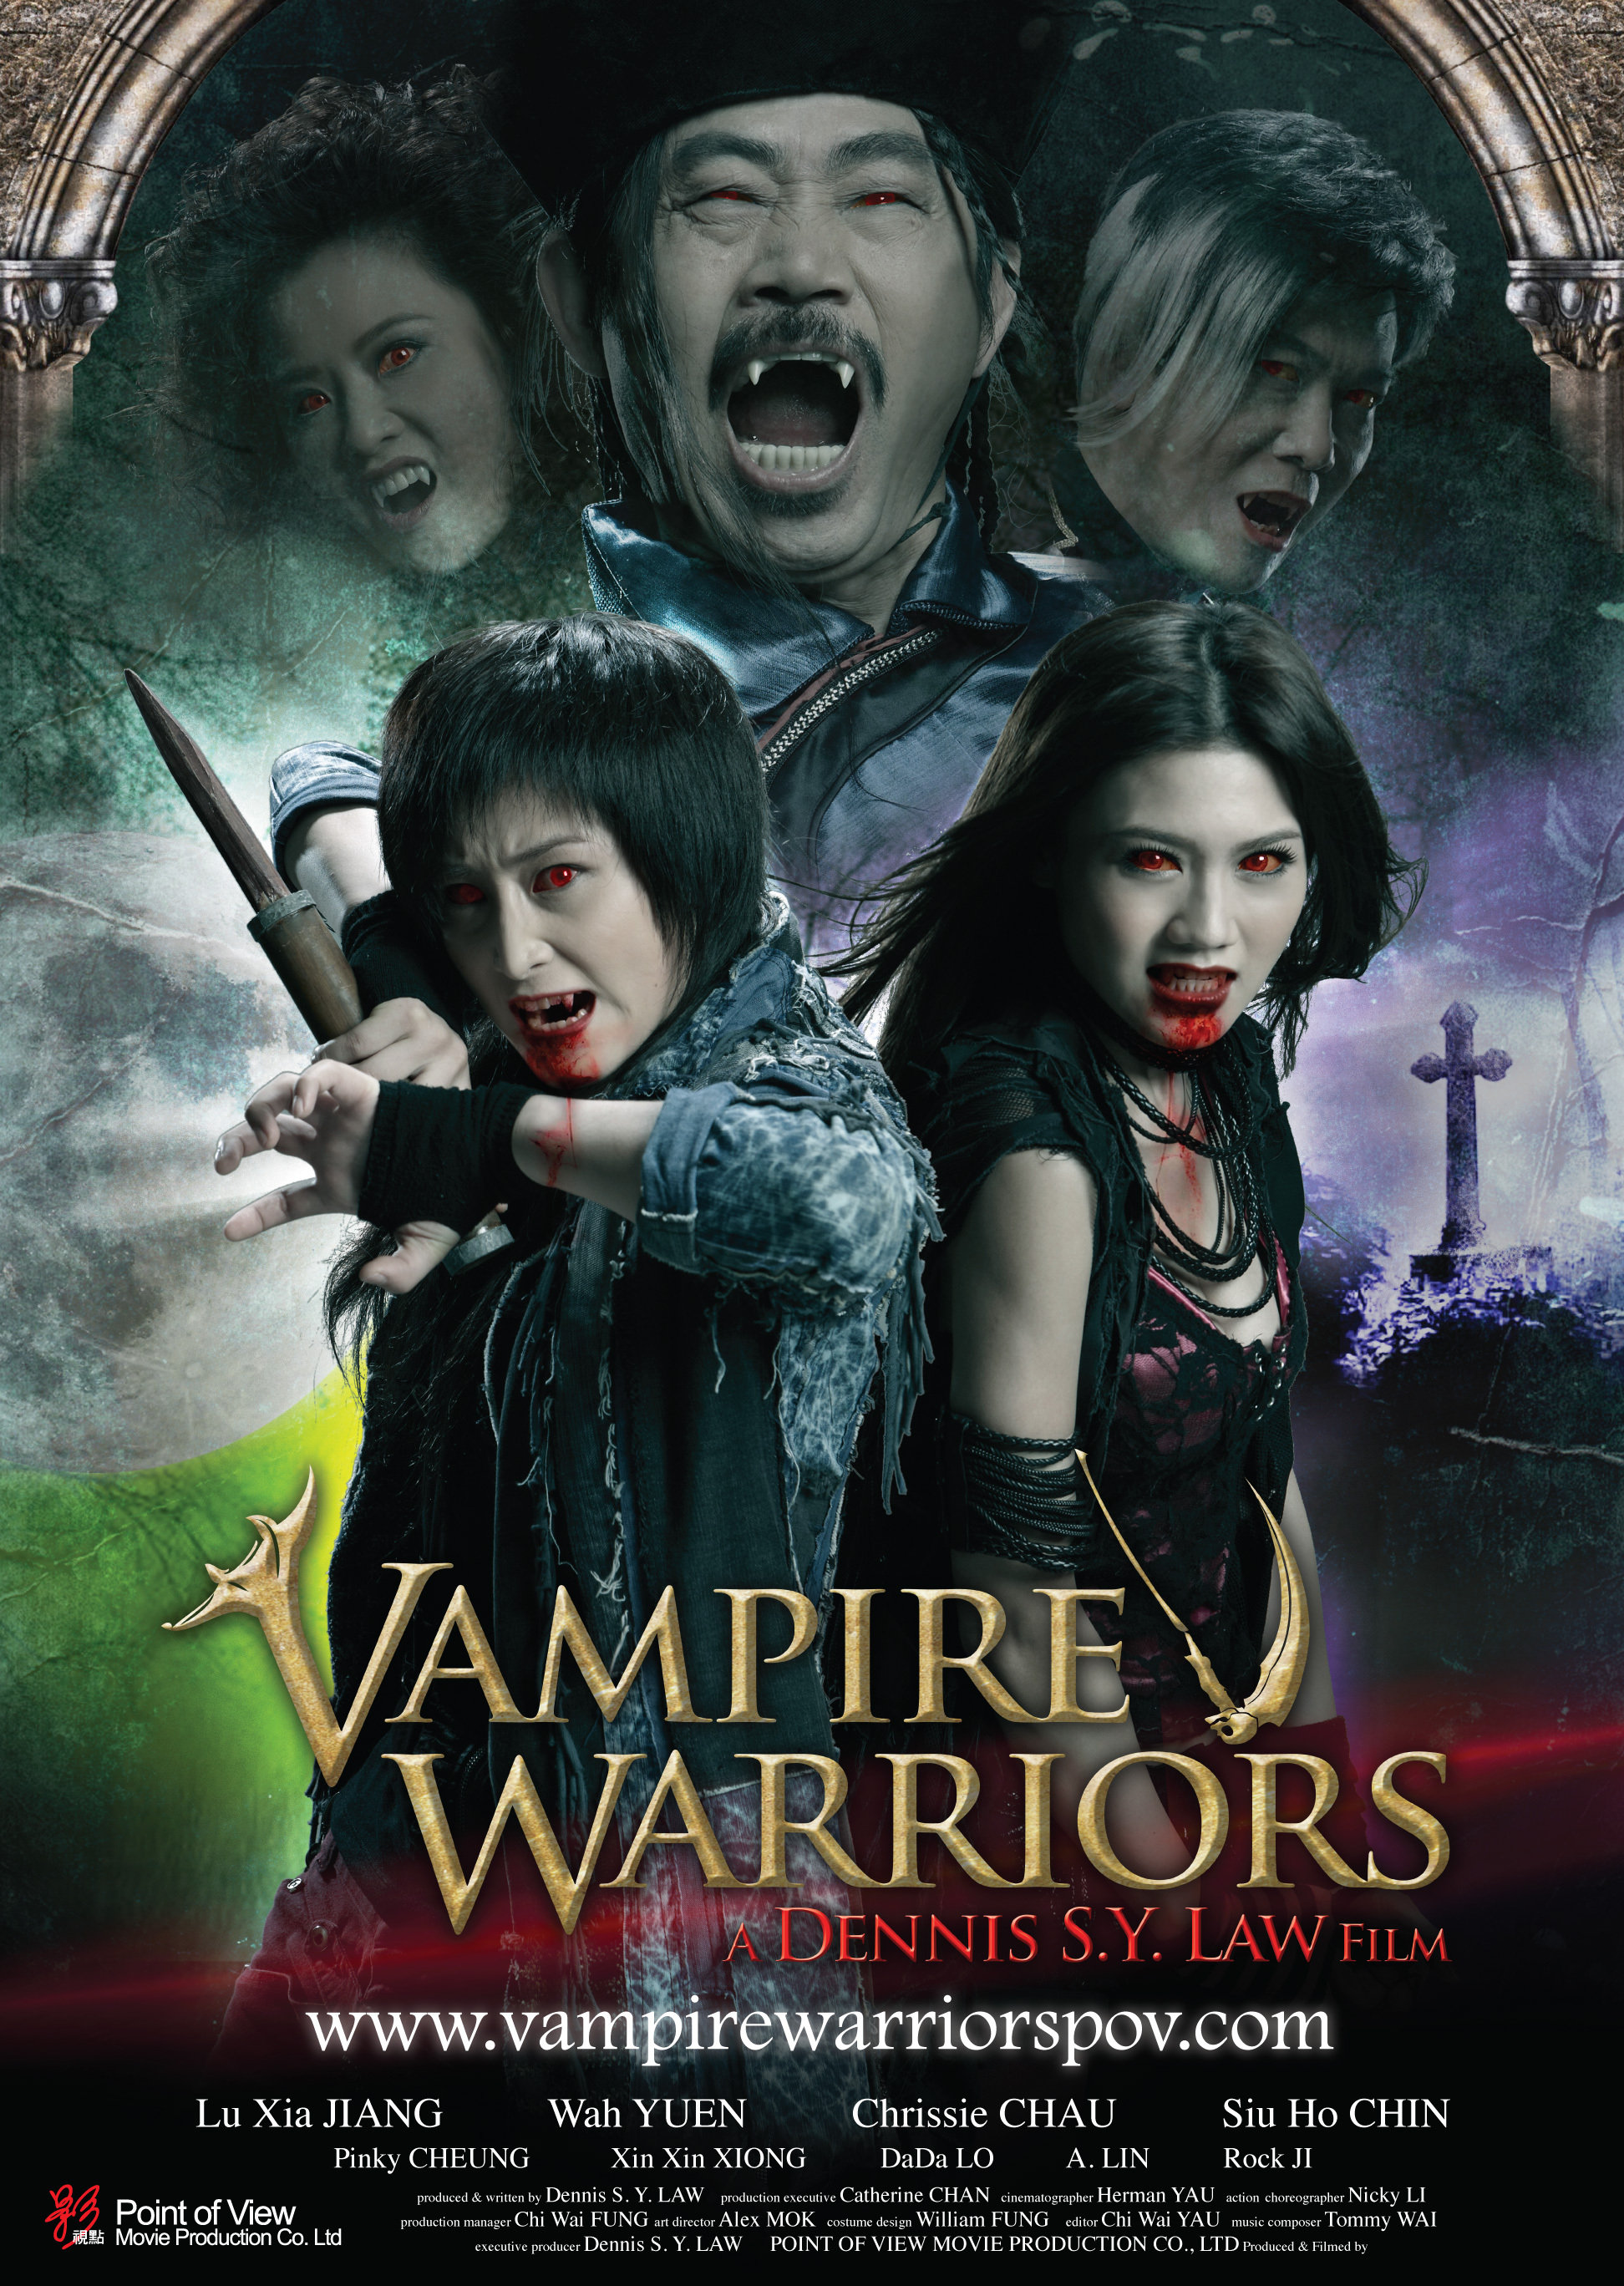 Vampire Warriors (2010) Screenshot 2 